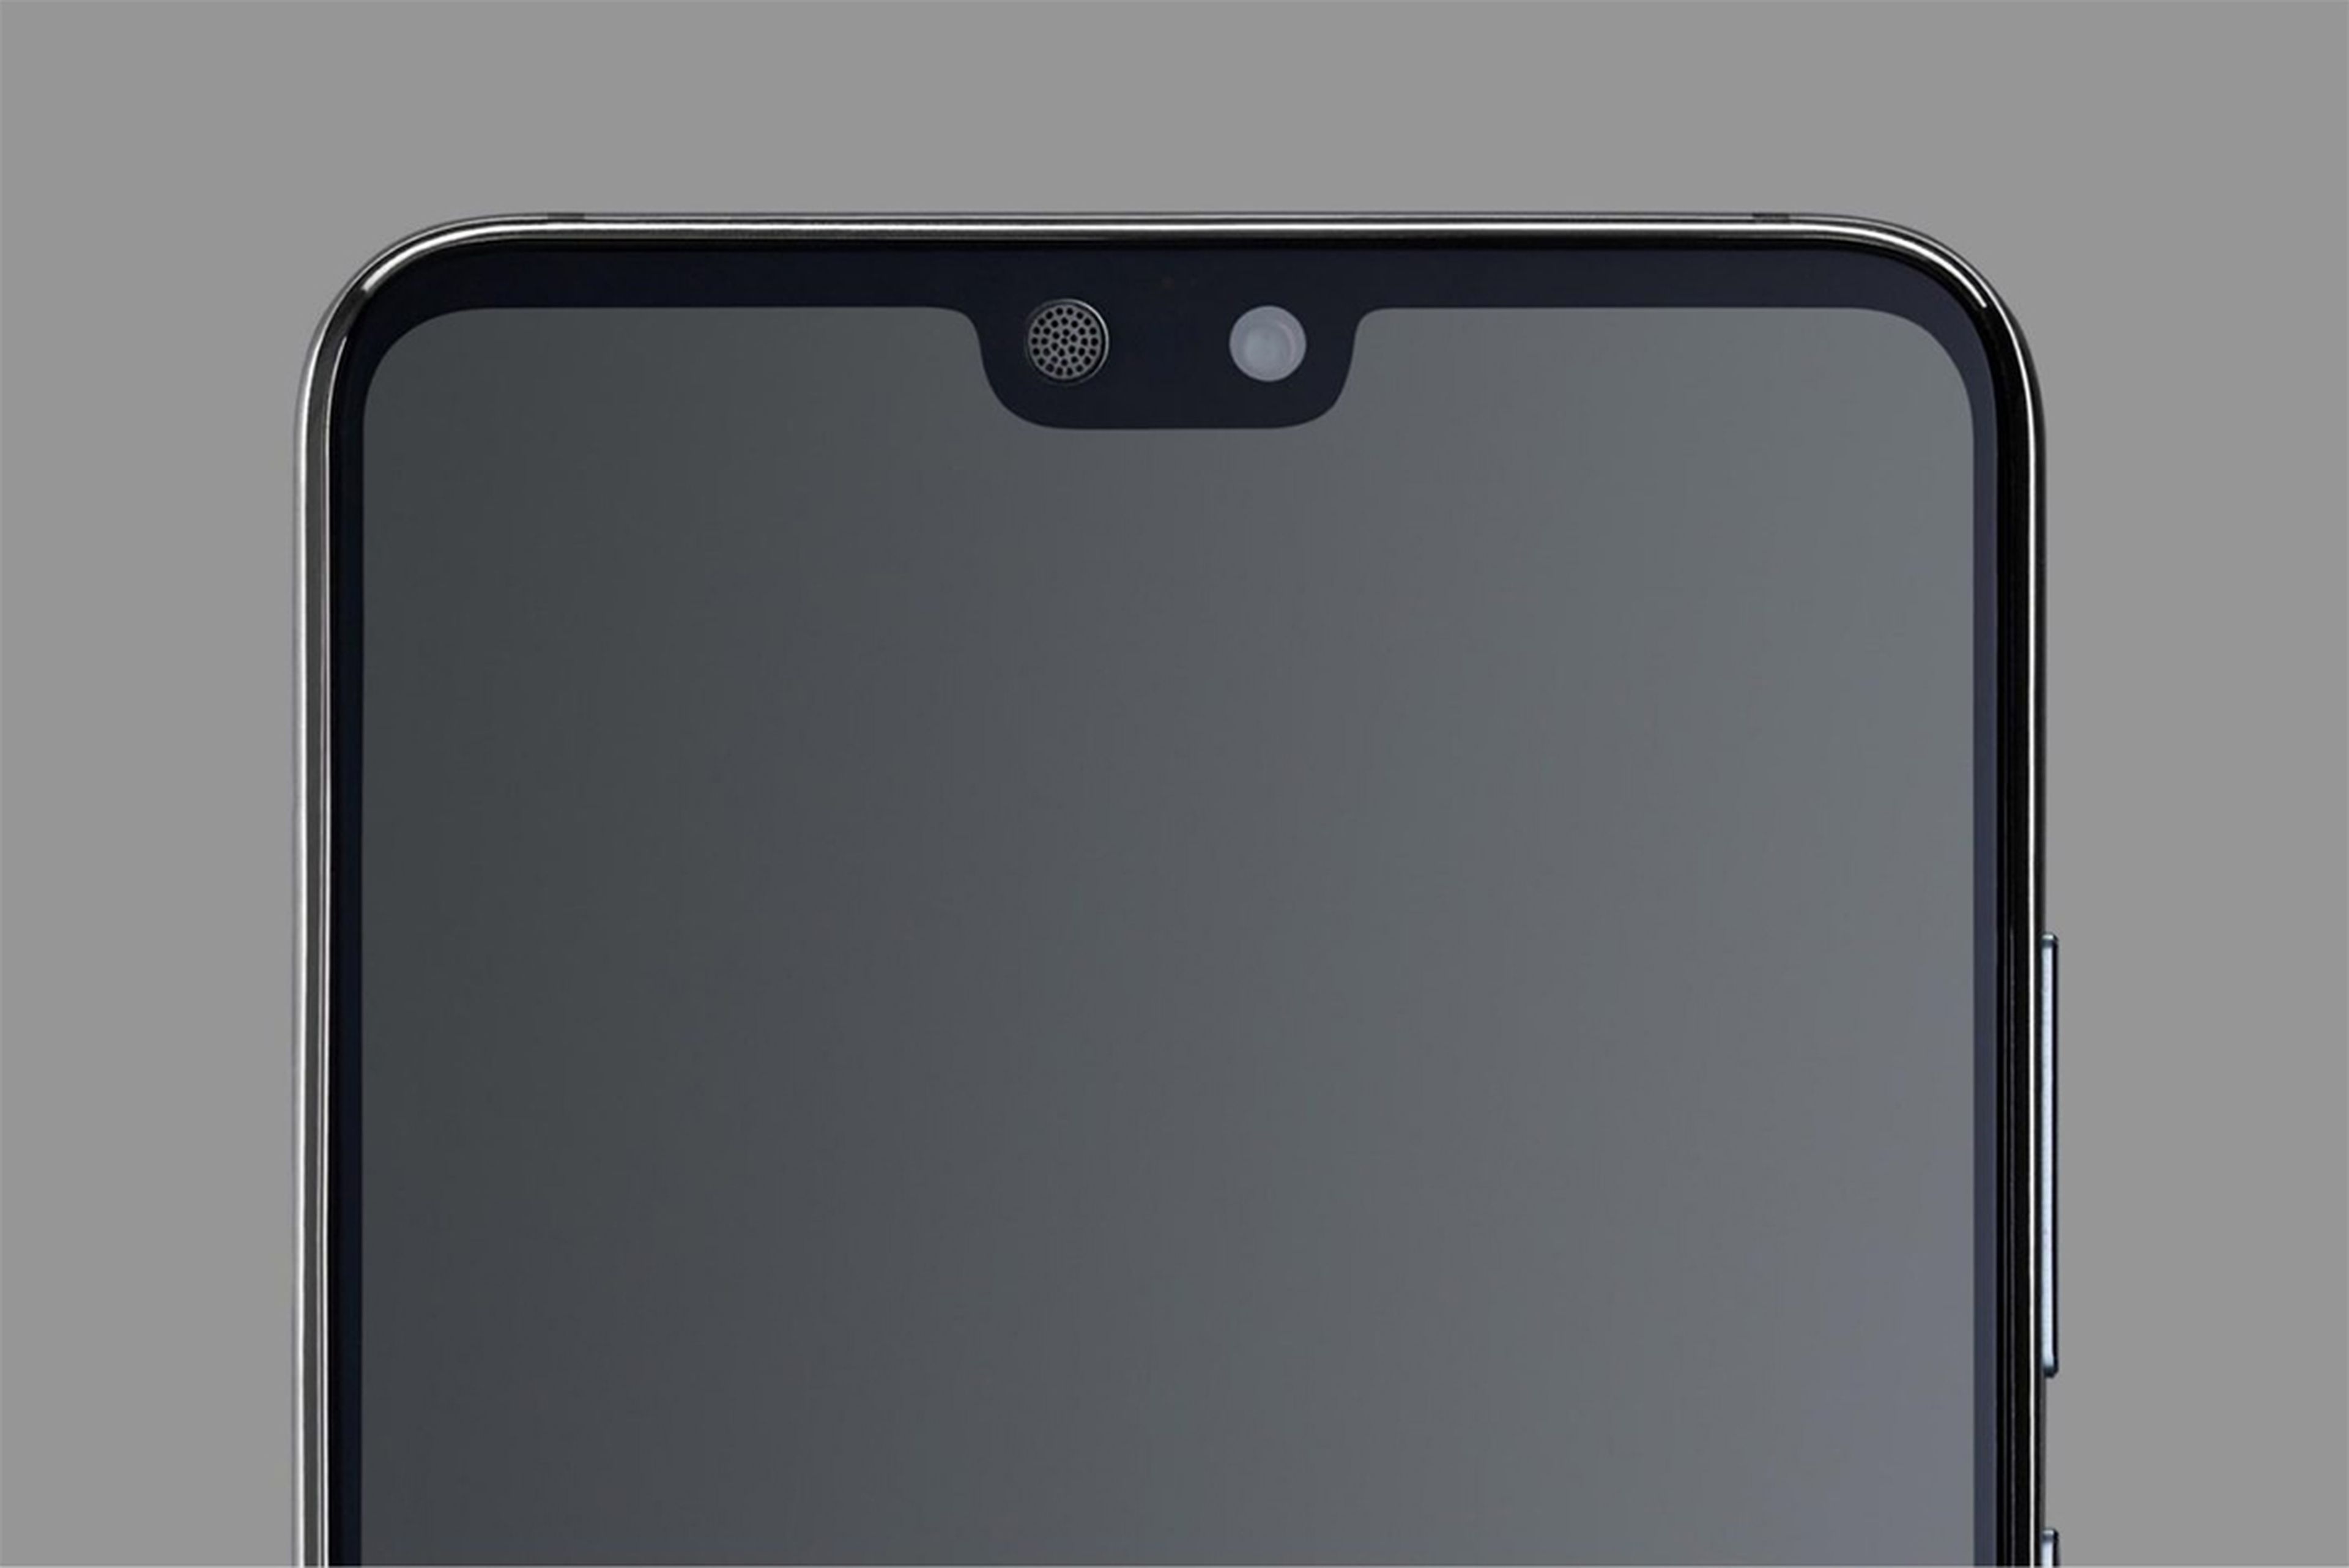 Los tres móviles de la familia Huawei P20 tienen una pantalla de extremo a extremo con hueco en la parte superior para integrar el notch con la cámara frontal.